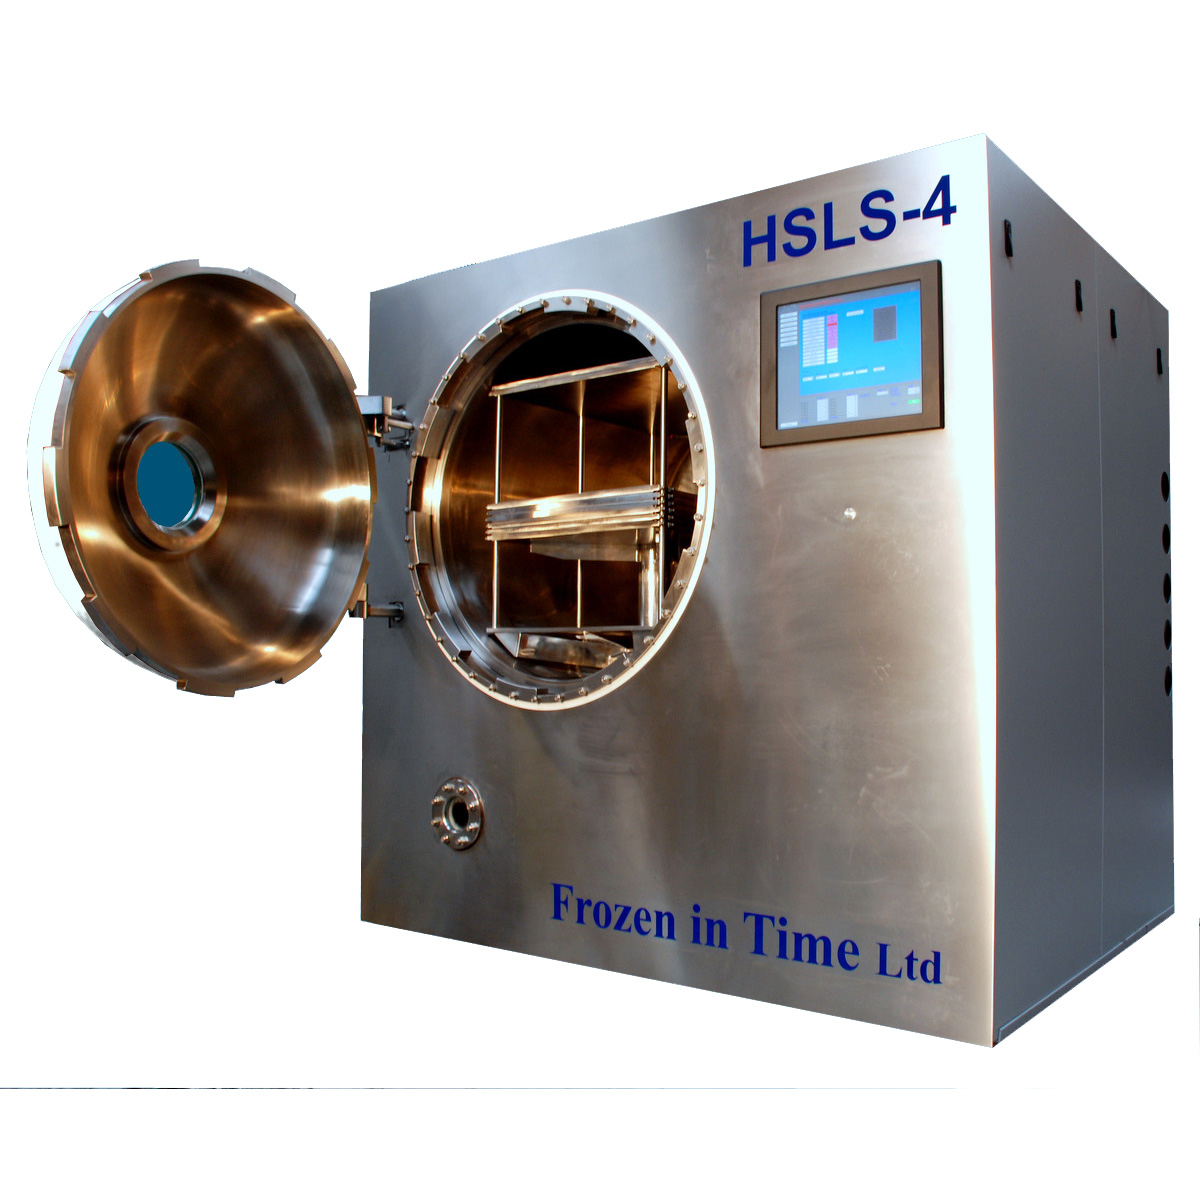 HSLS-4 steam sterilisable freeze drier